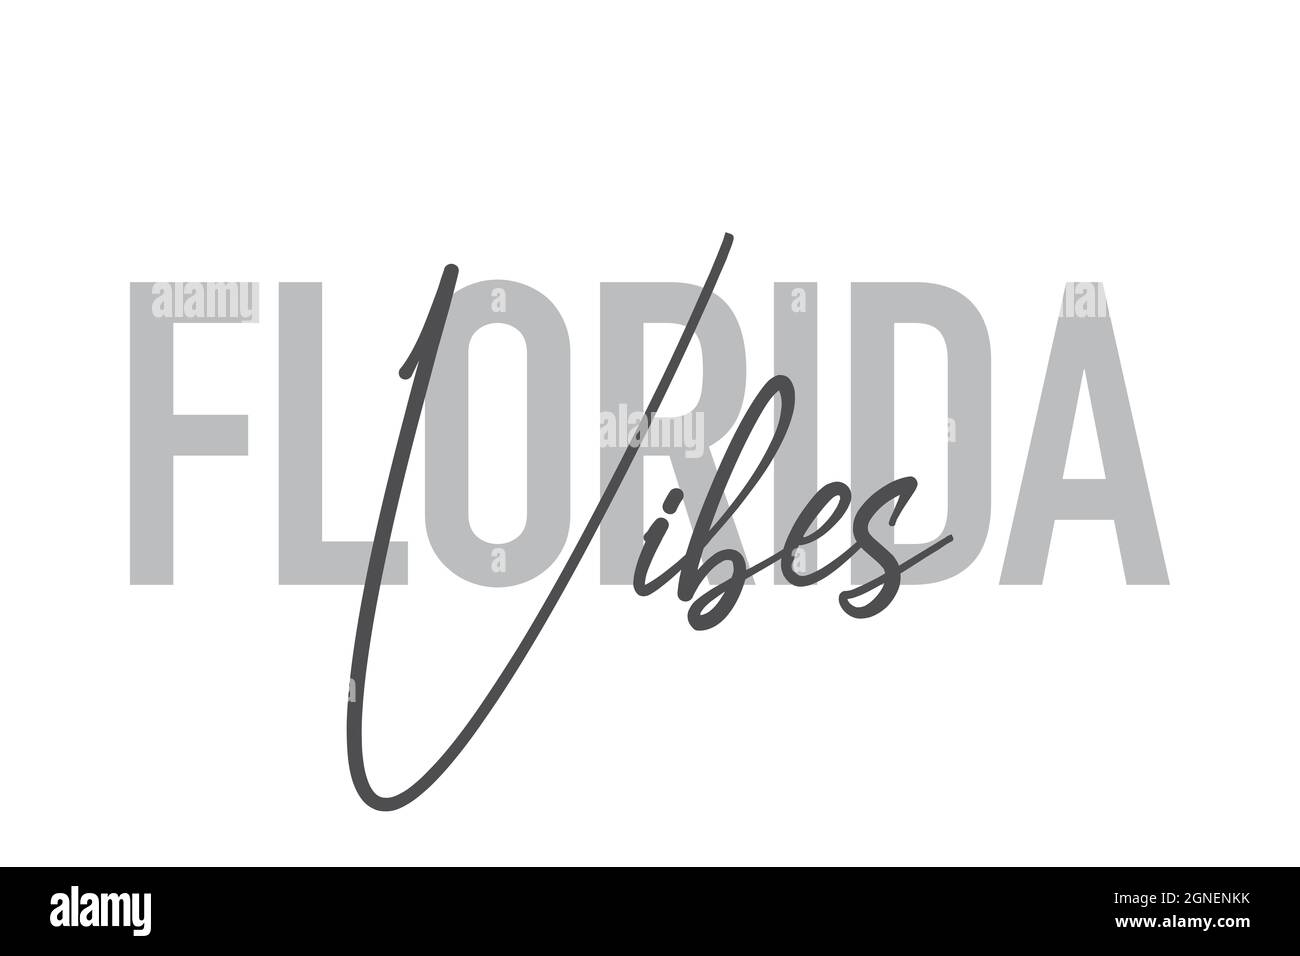 Conception typographique moderne, simple et minimaliste d'une expression « Florida Vibes » dans des tons de gris. Art vectoriel graphique cool, urbain, tendance et ludique avec Banque D'Images